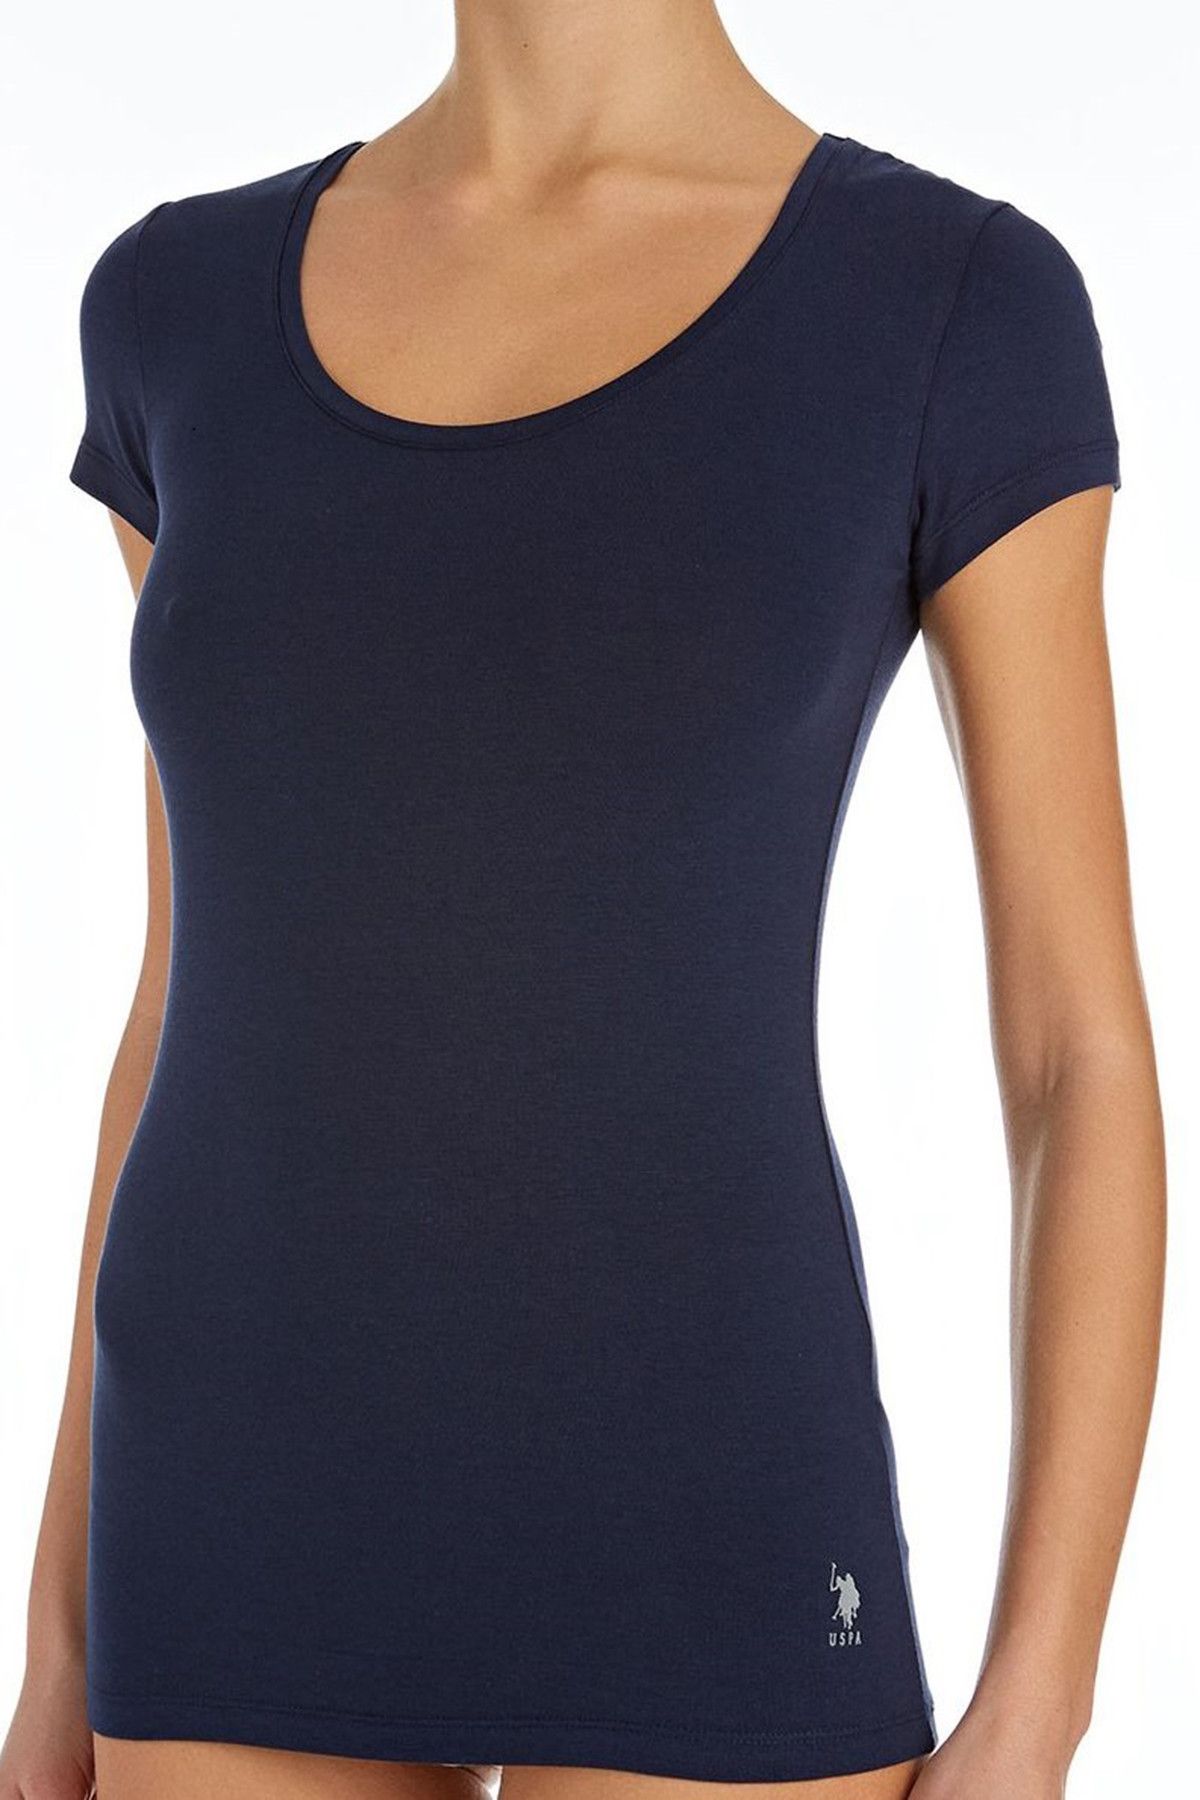 U.S. Polo Assn. Kadın Lacivert Derin O Yaka T-Shirt 66163